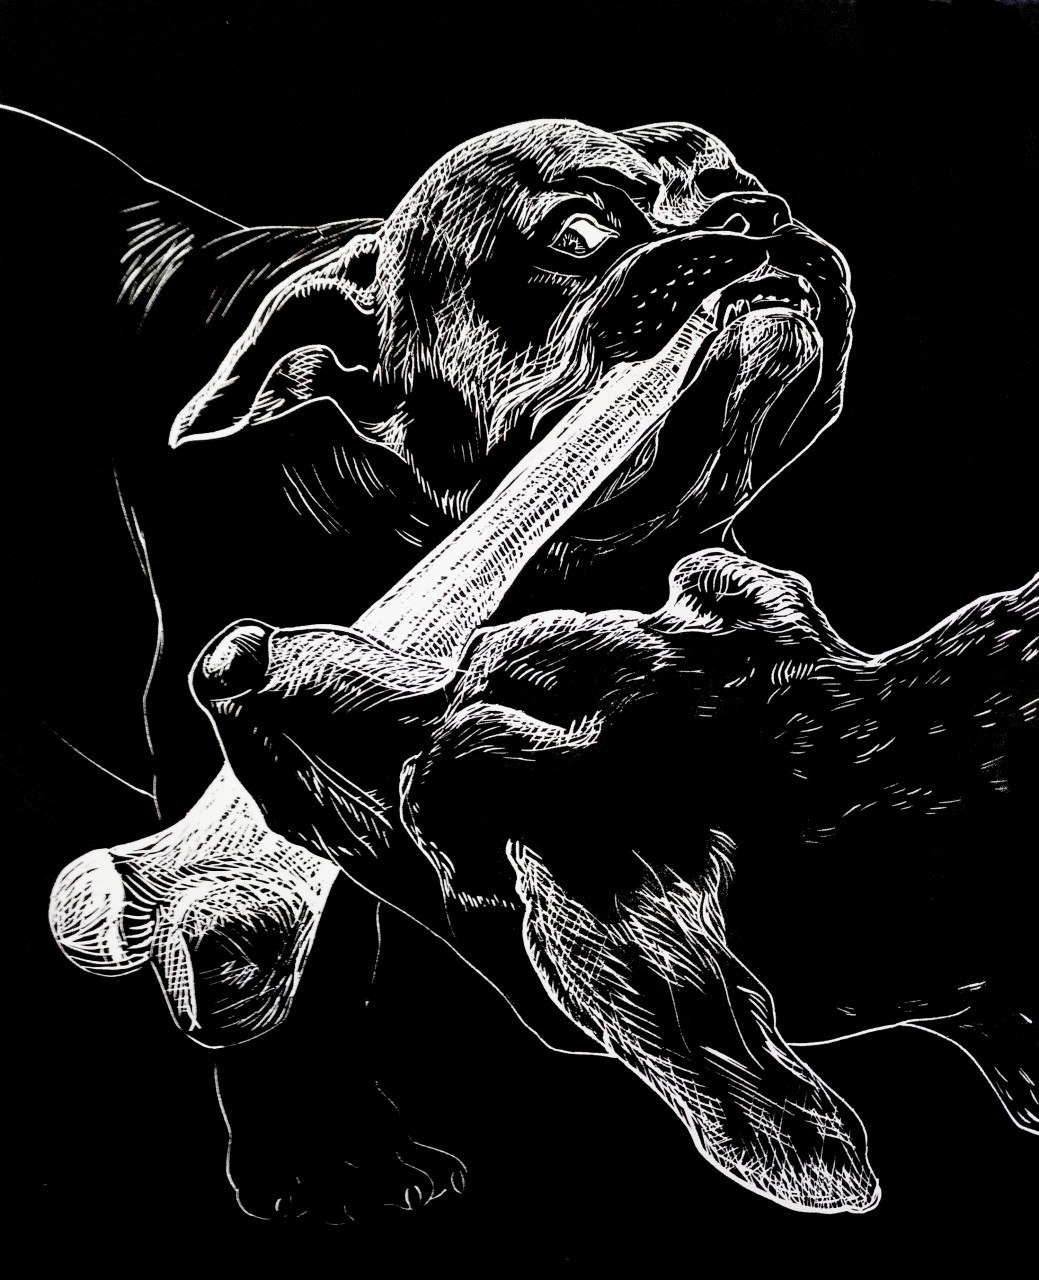 Иллюстрация к басне И. А. Крылова "Собачья дружба"